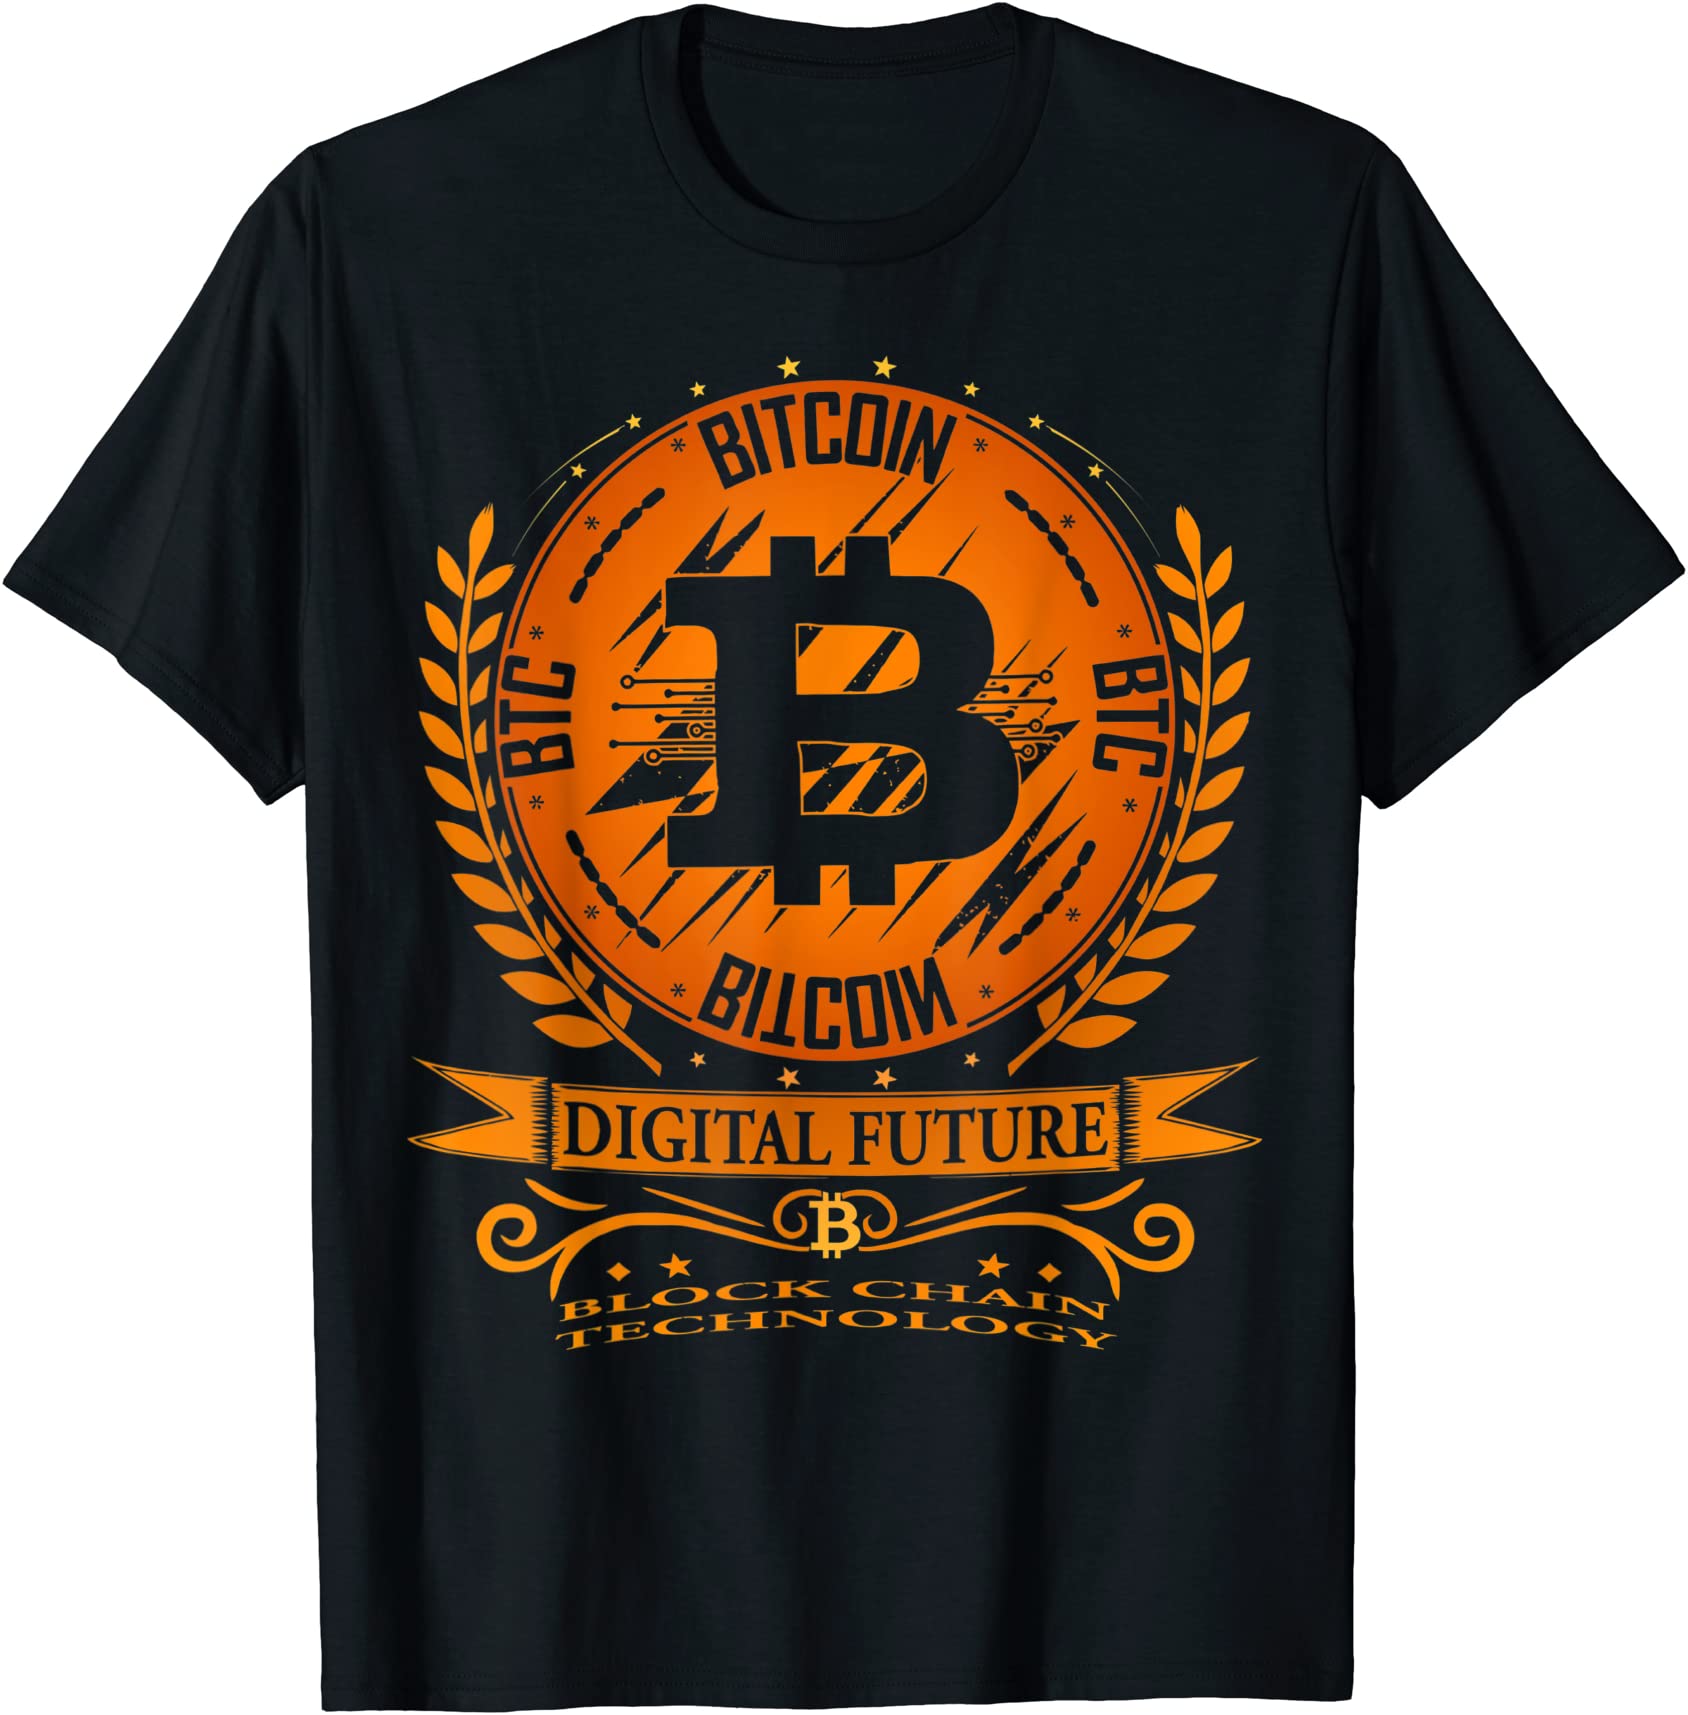 bitcoin btc block chain technology t shirt men - Buy t-shirt designs